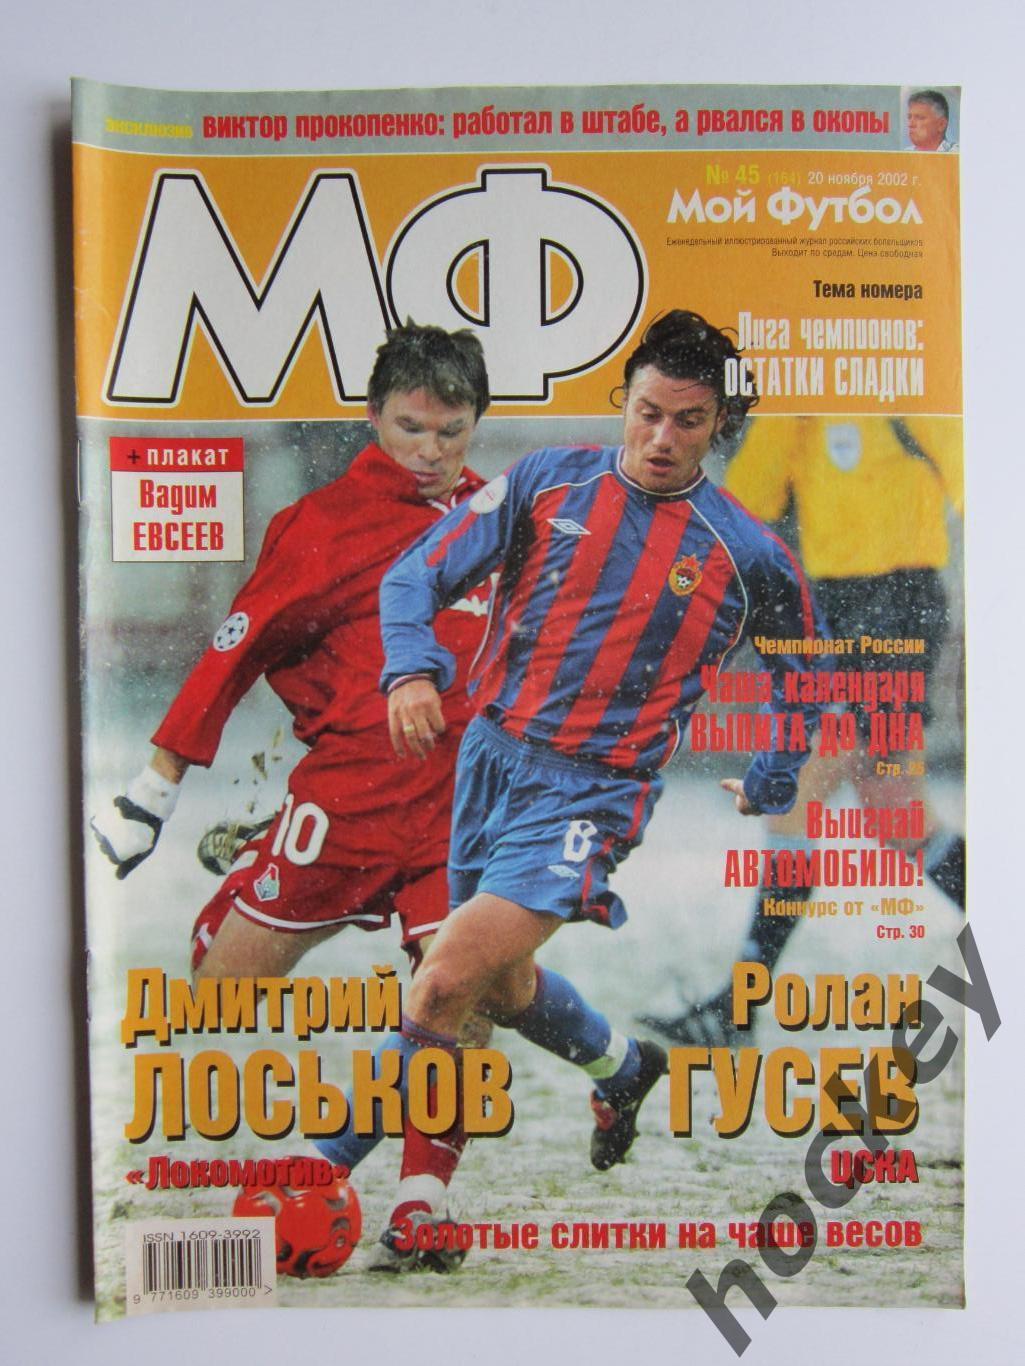 Мой футбол № 45 (164). (20 ноября 2002 года). Постер Вадим Евсеев